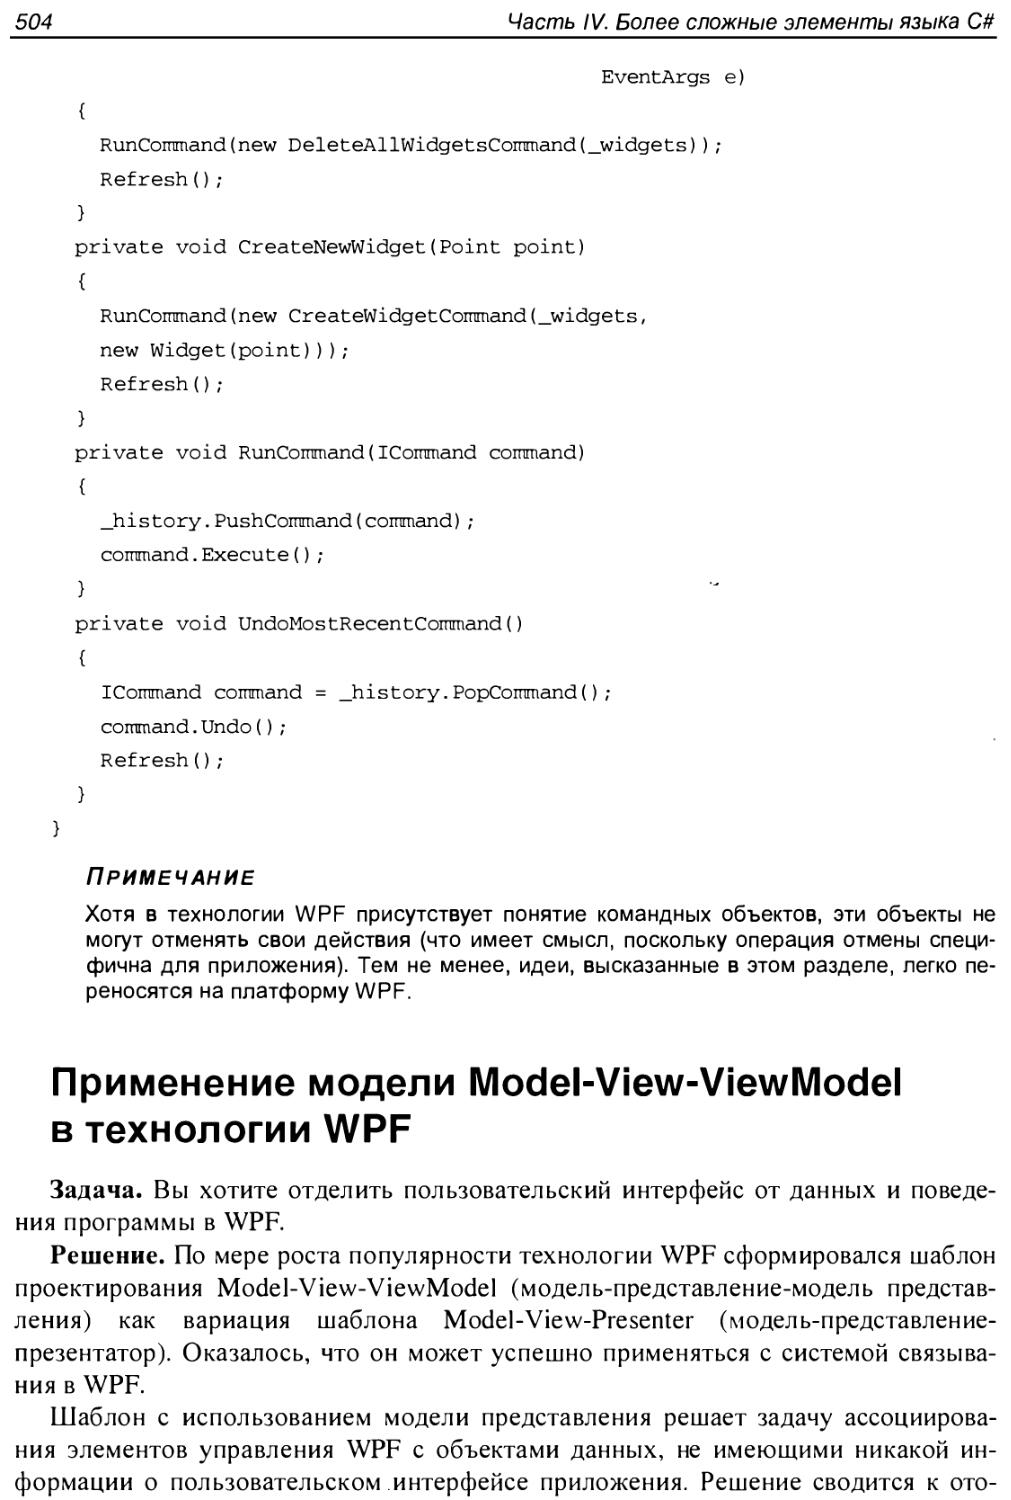 Применение модели Model-View-ViewModel в технологии WPF